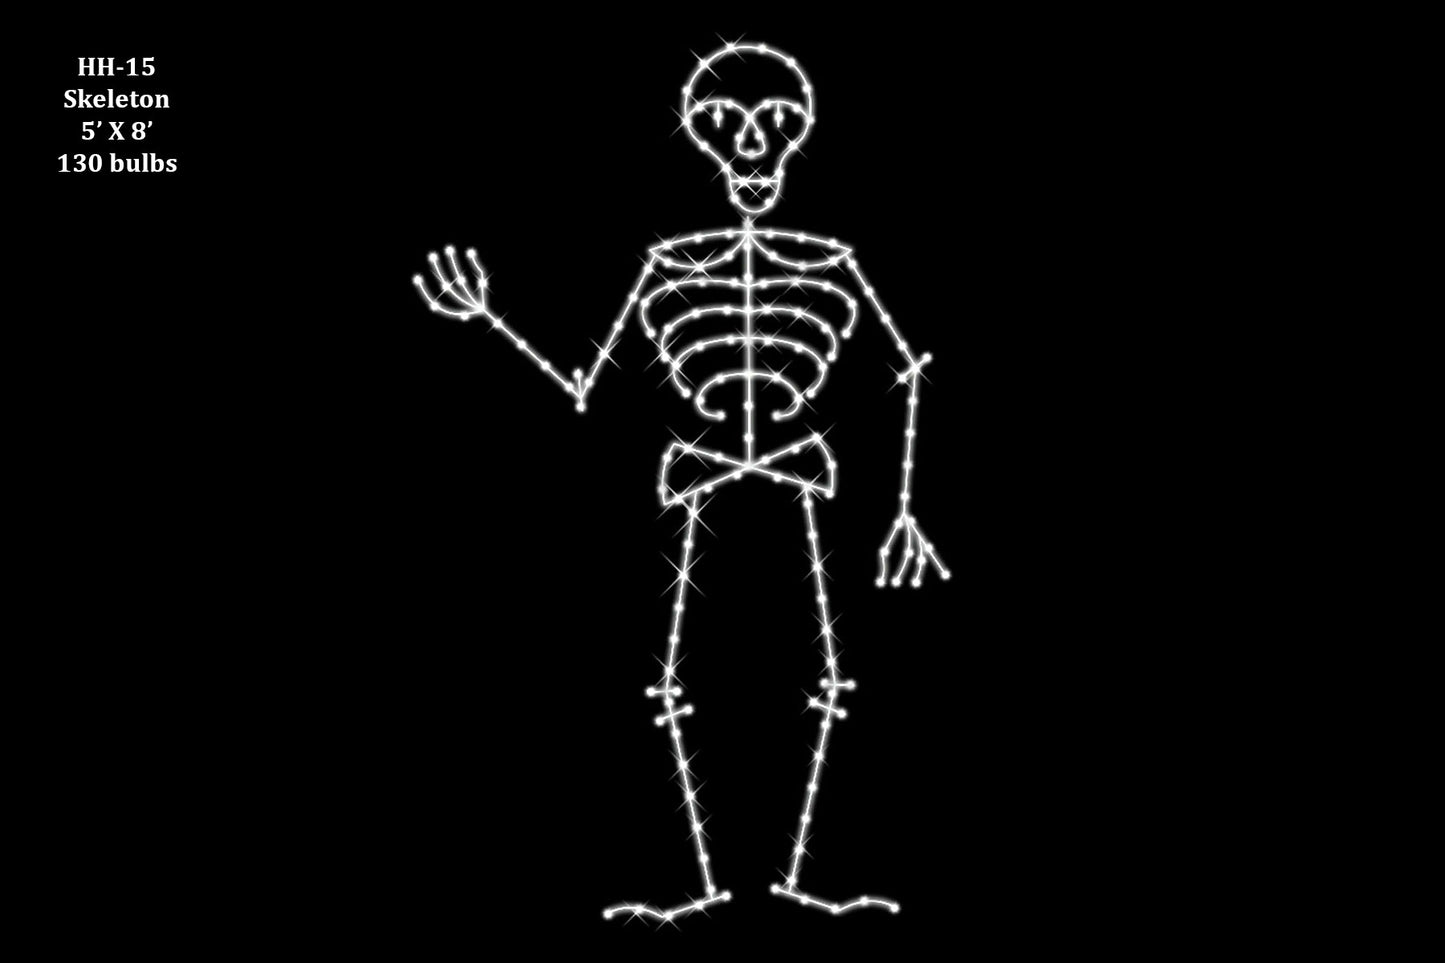 Skeleton 5' x 8'